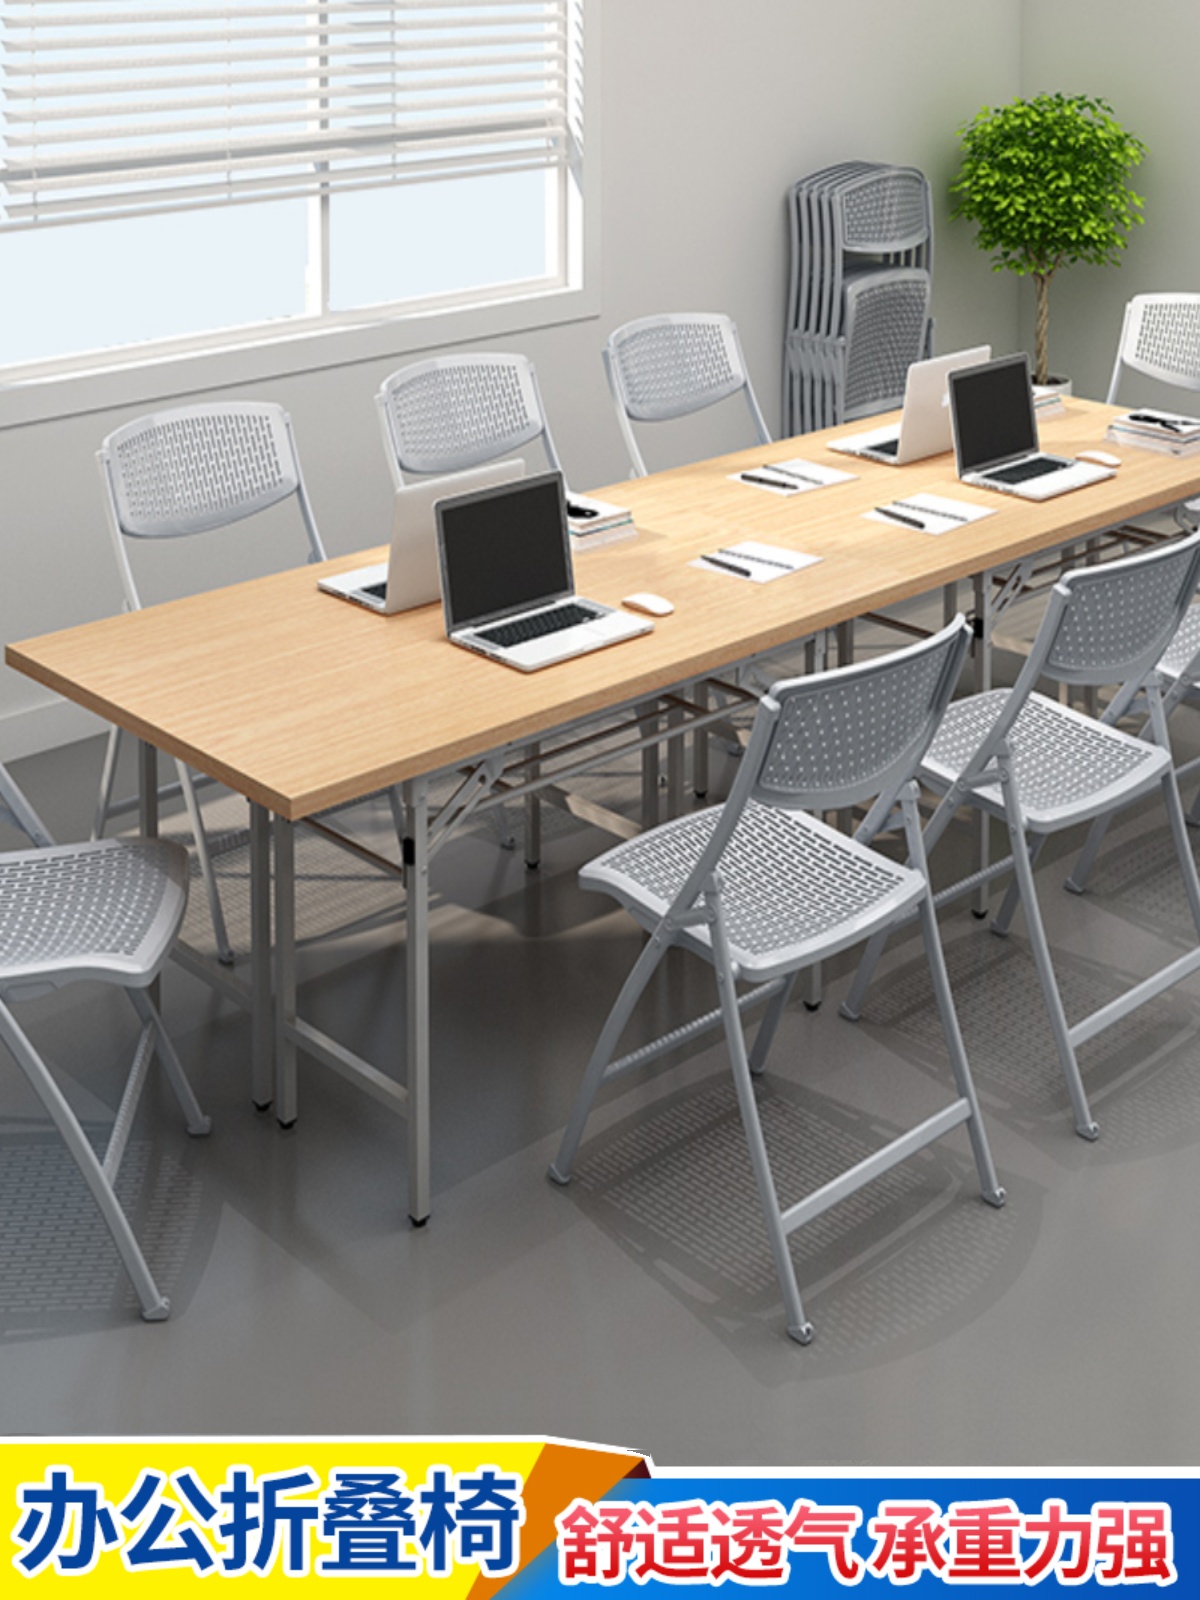 折叠椅子培训机构记者小桌板可堆叠绿色小凳定制发布会稳固靠